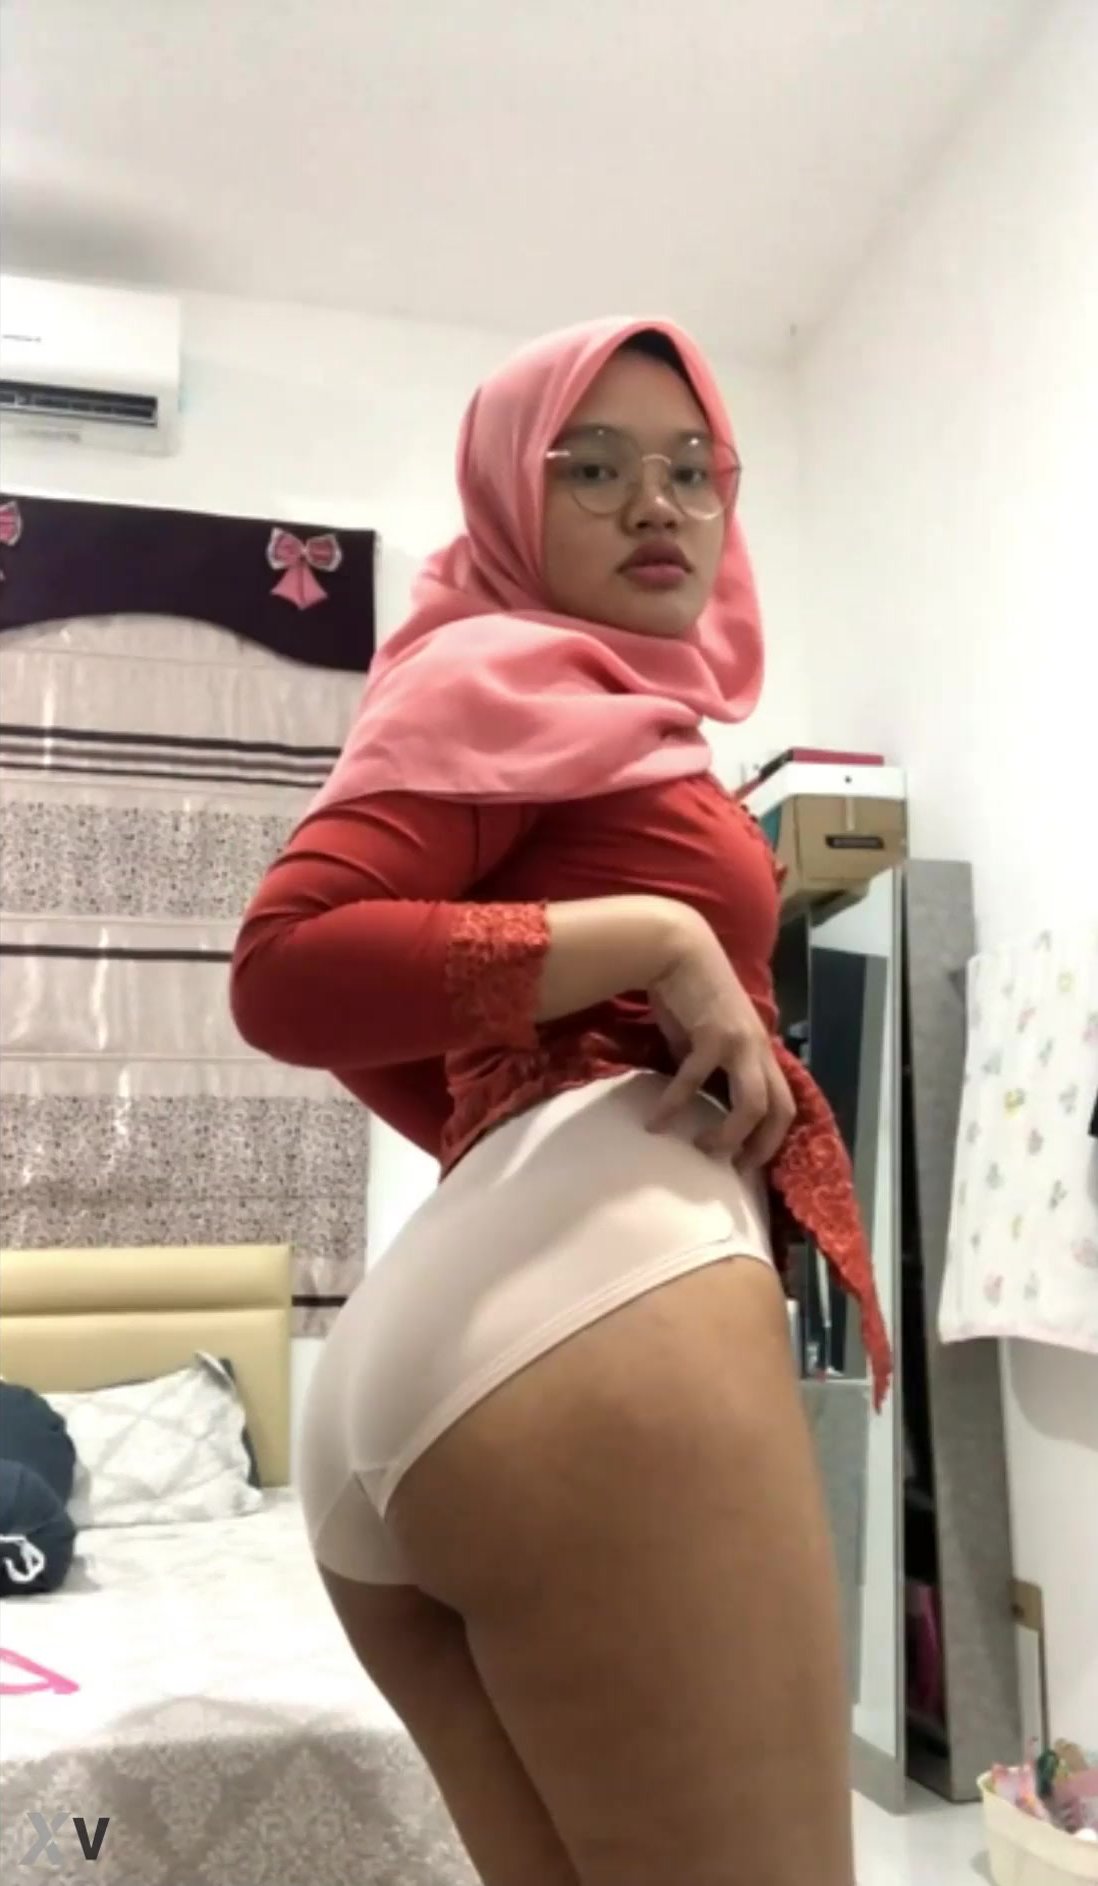 Indonesia Jilbab hijab - ThisVid.com En español